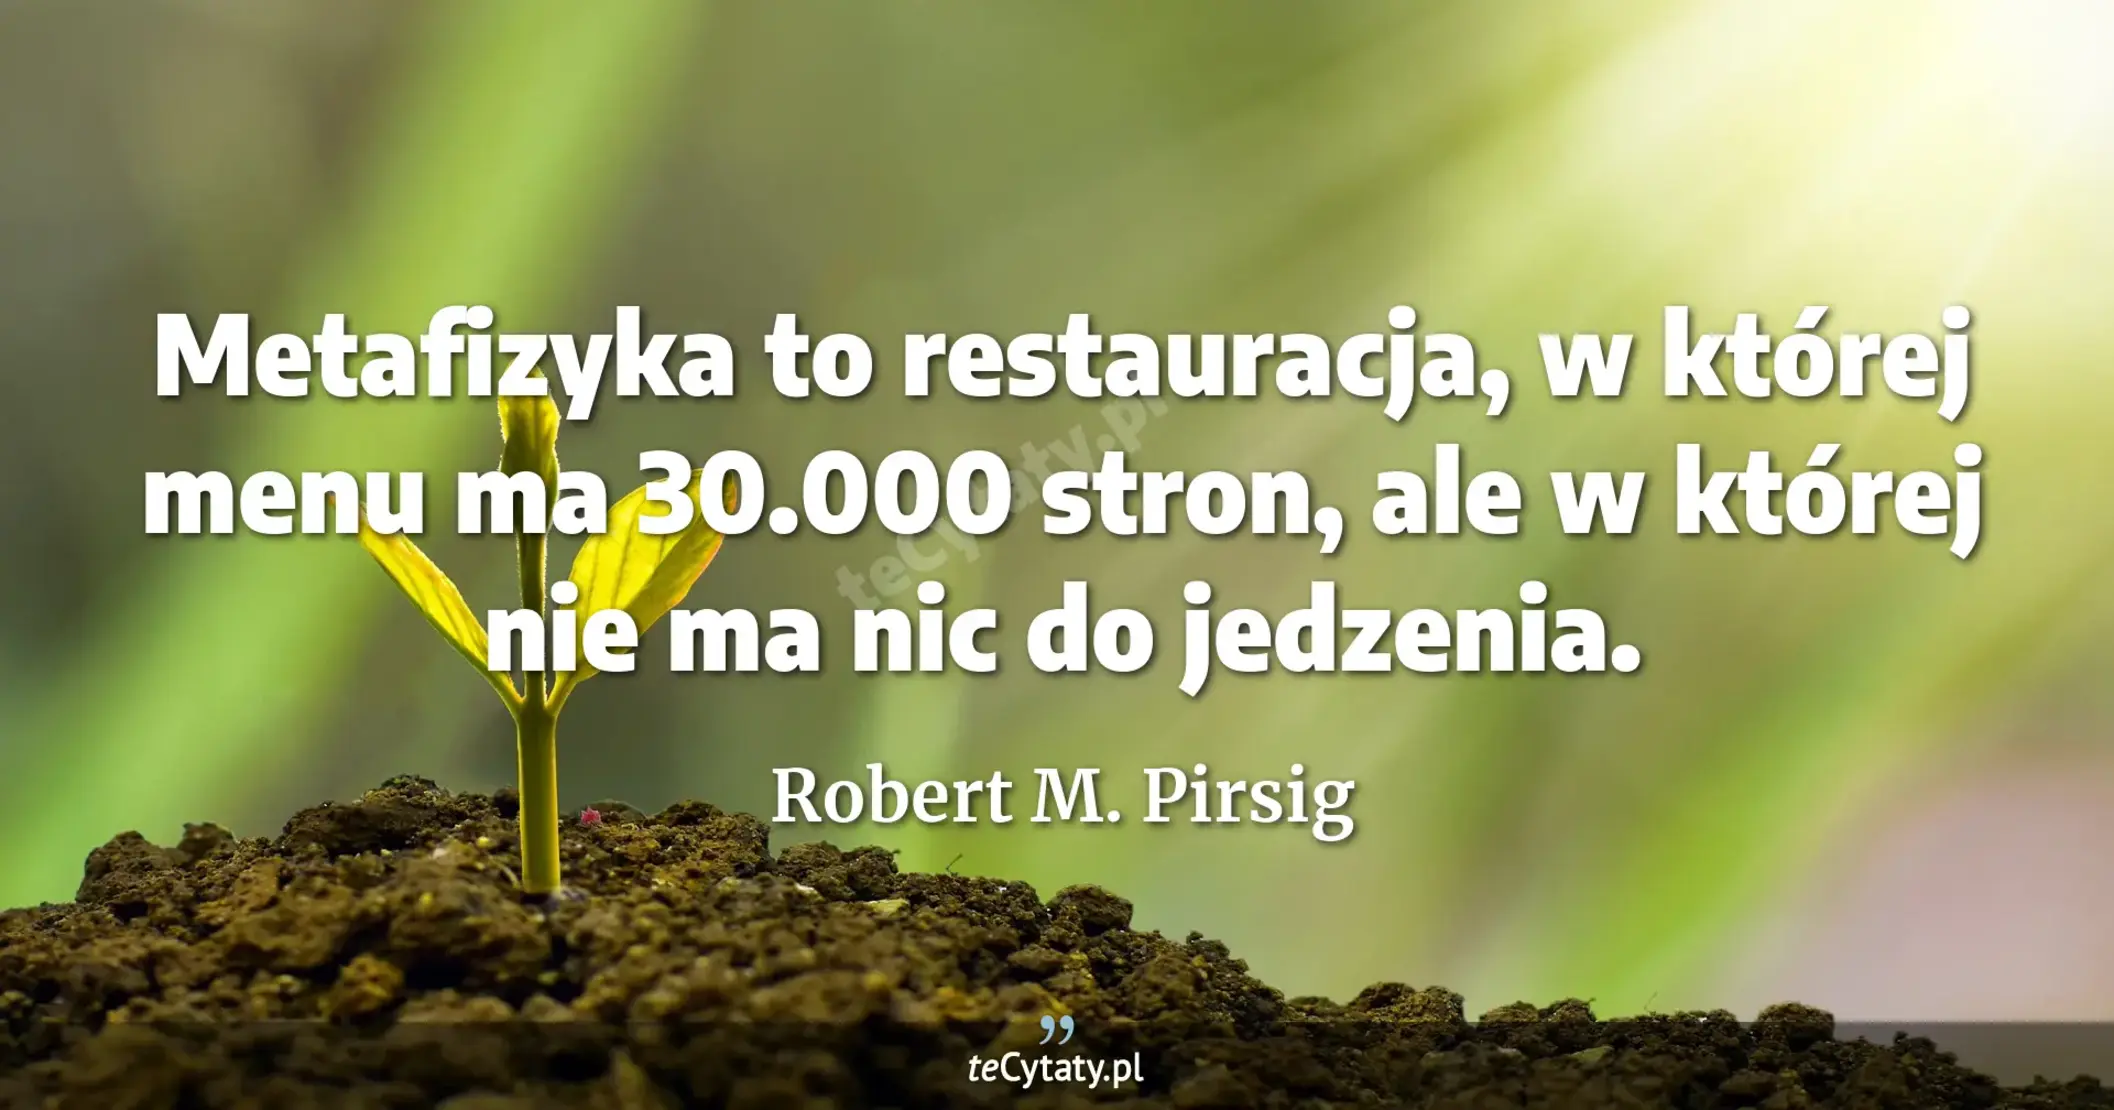 Metafizyka to restauracja, w której menu ma 30.000 stron, ale w której nie ma nic do jedzenia. - Robert M. Pirsig